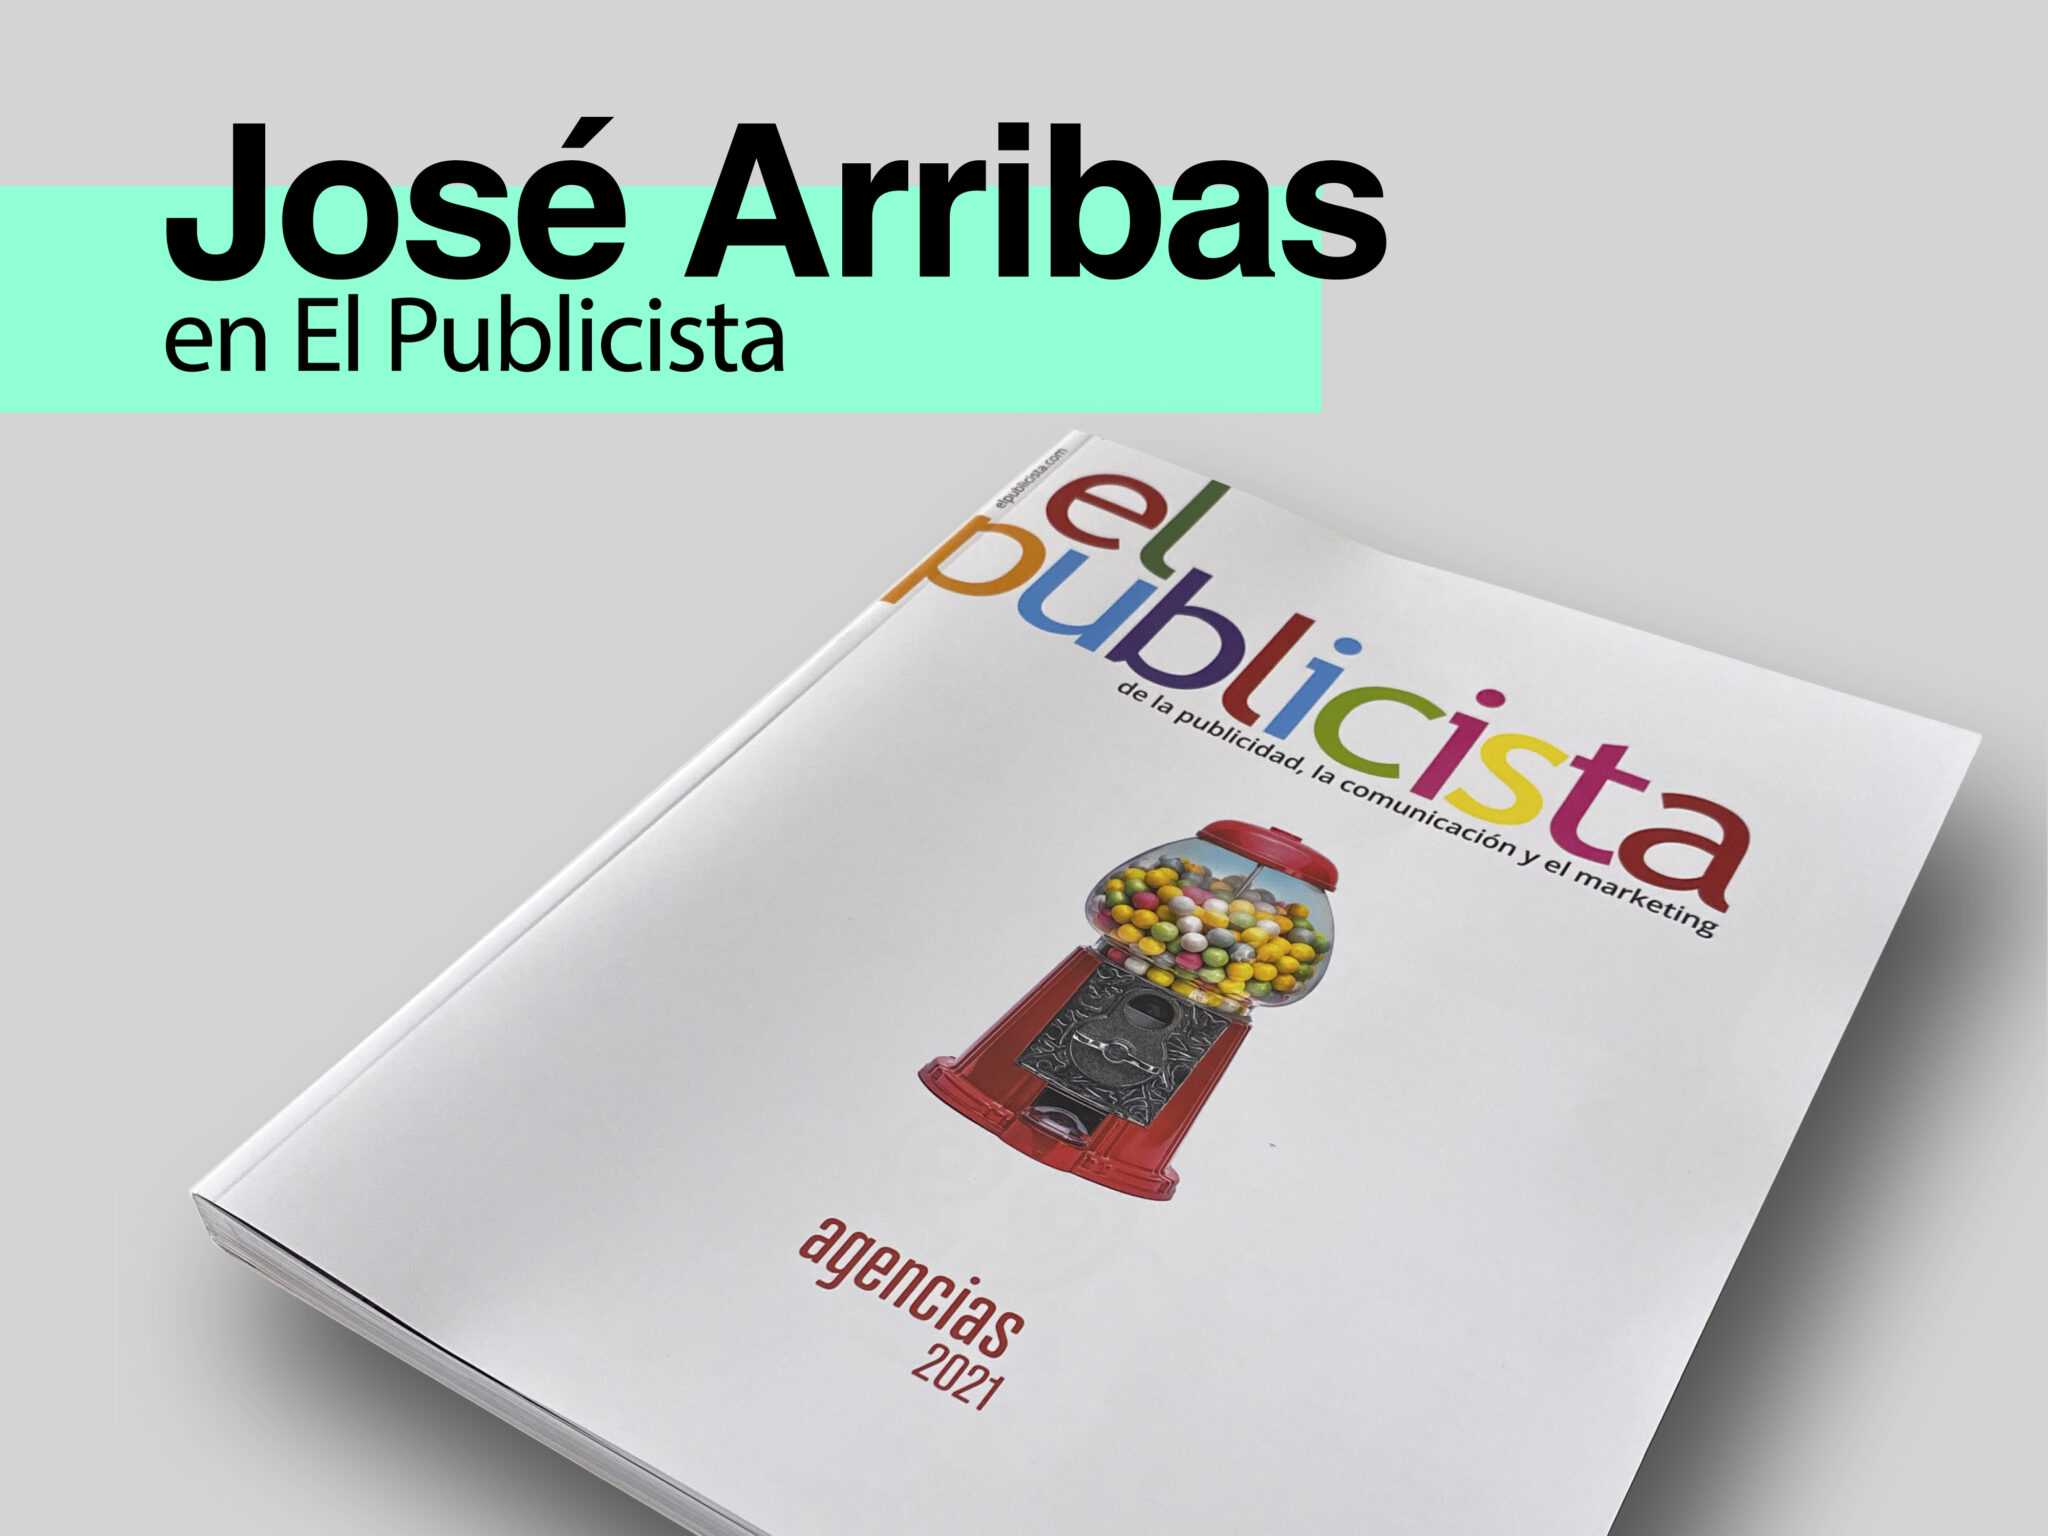 Nueva entrevista a José Arribas León en el medio El Publicista - Parnaso